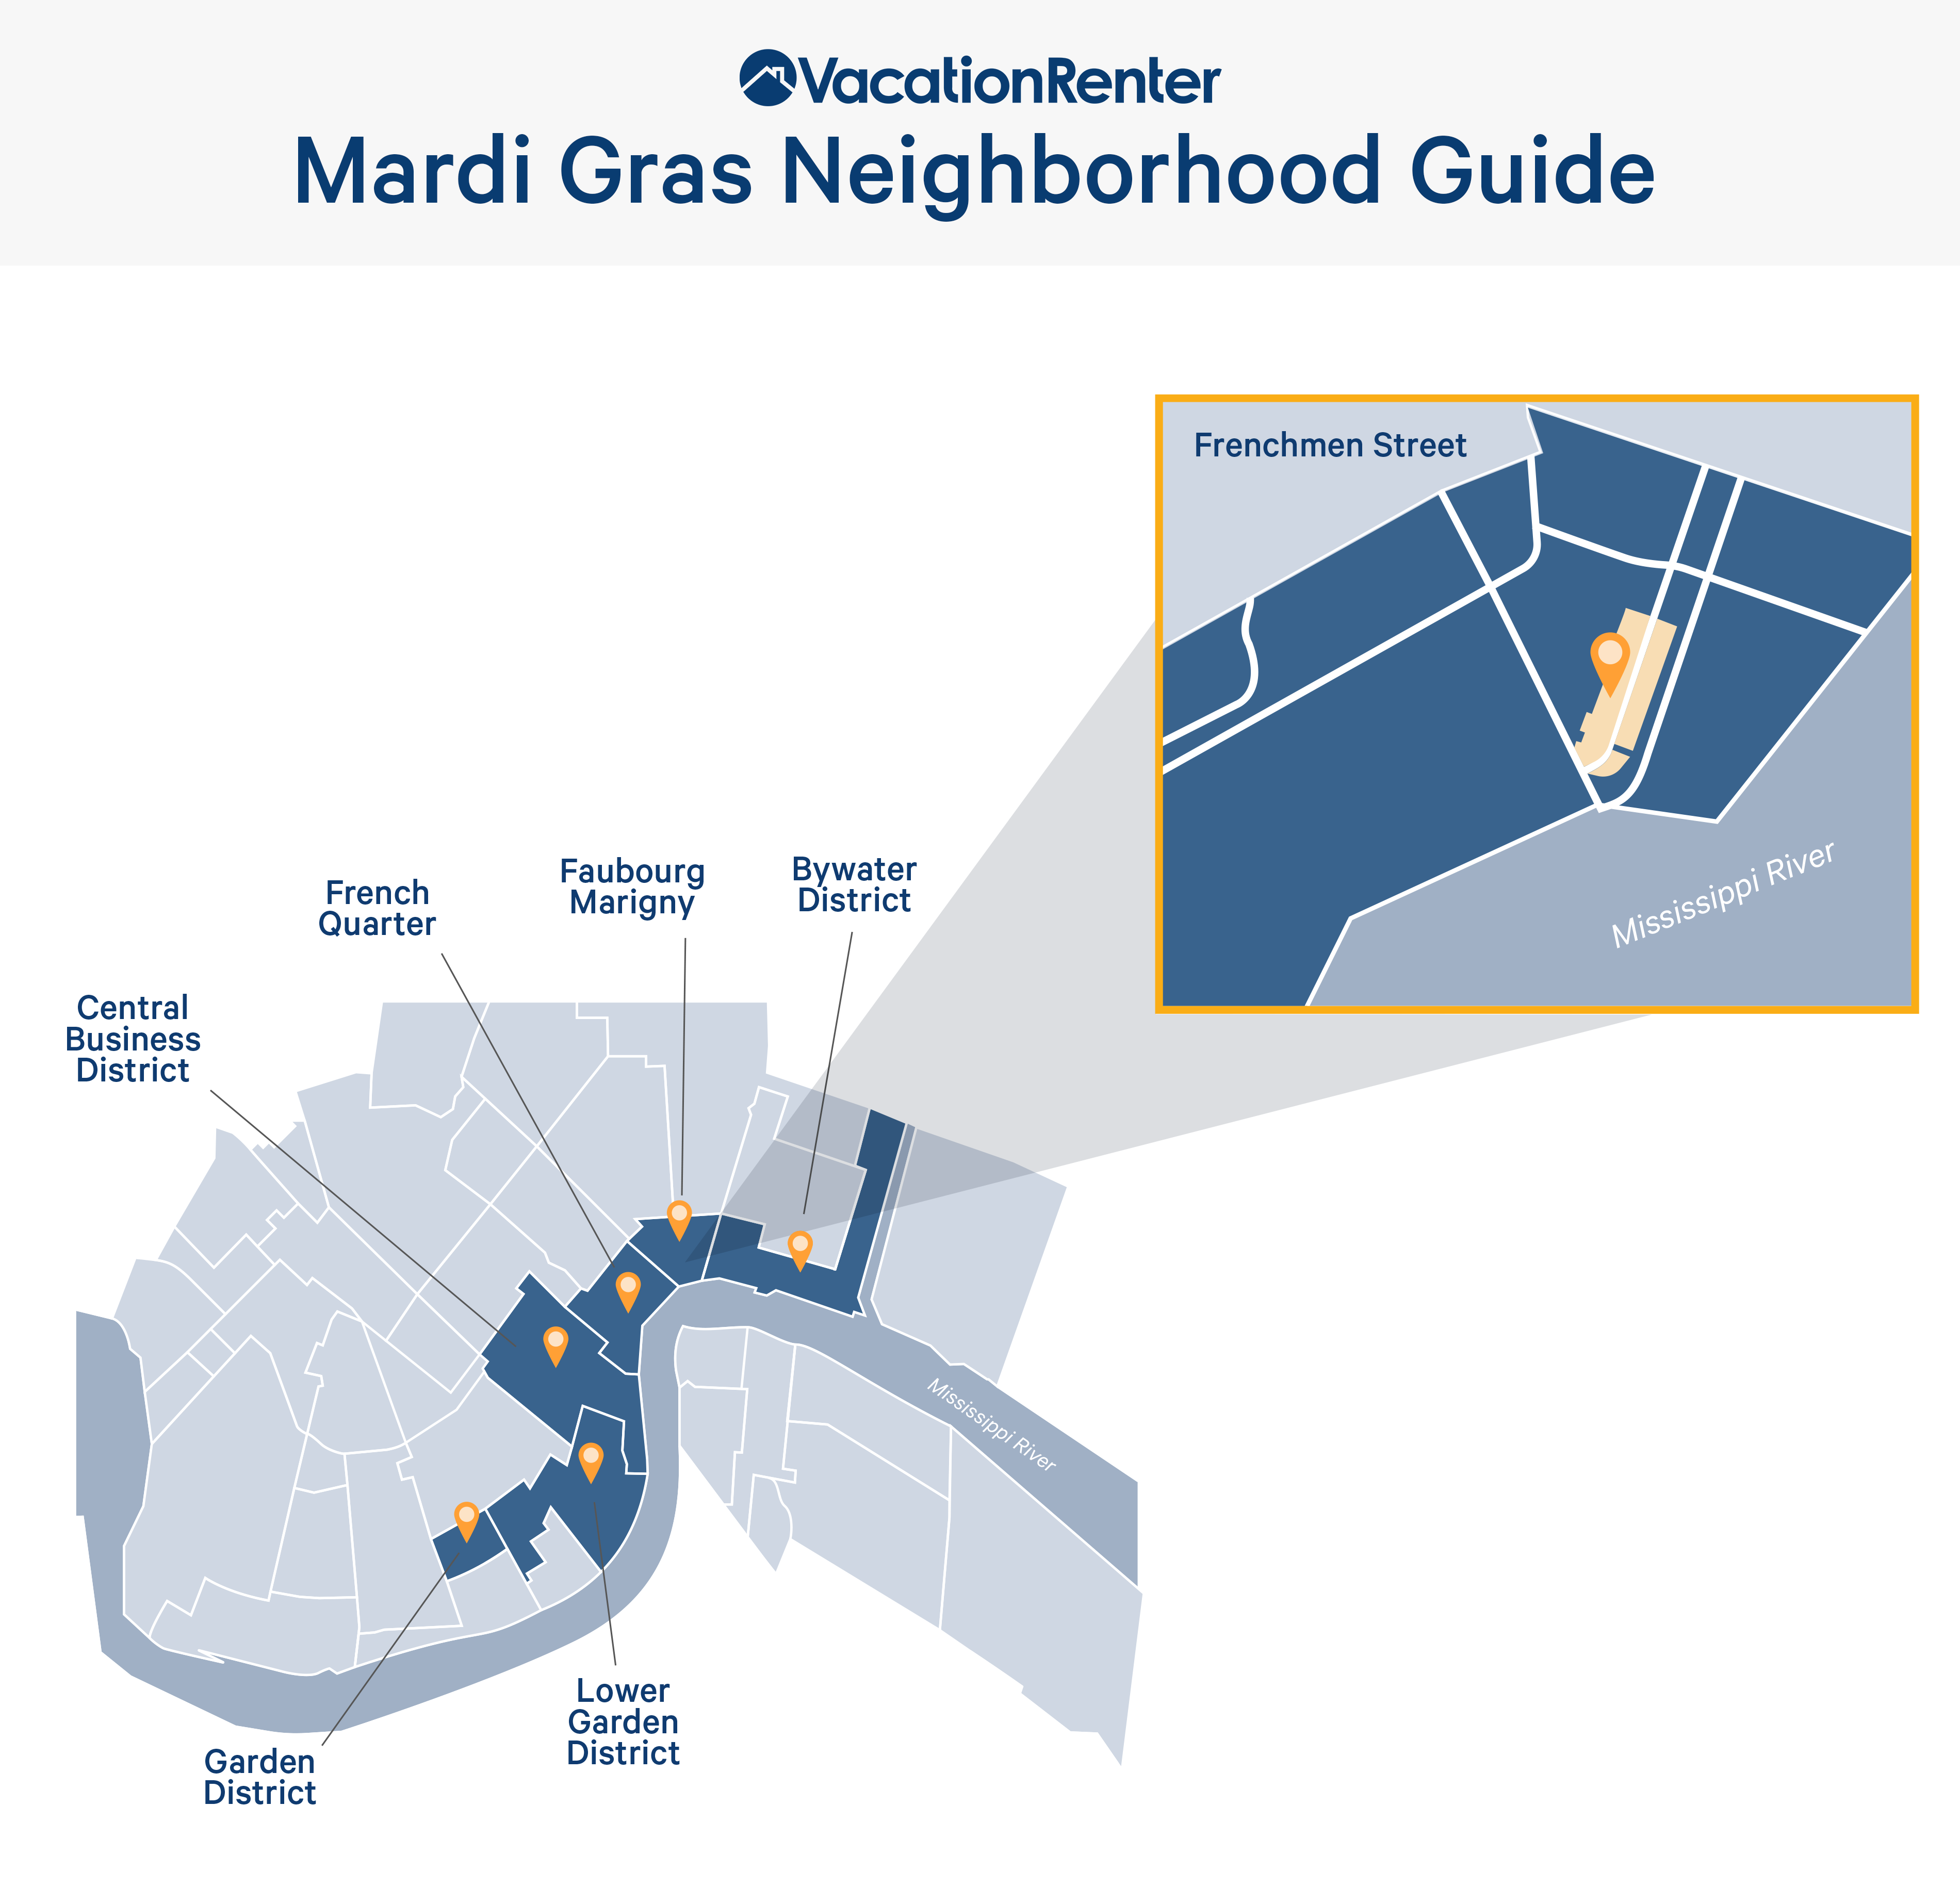 Mardi Gras neighborhood guide in New Orleans